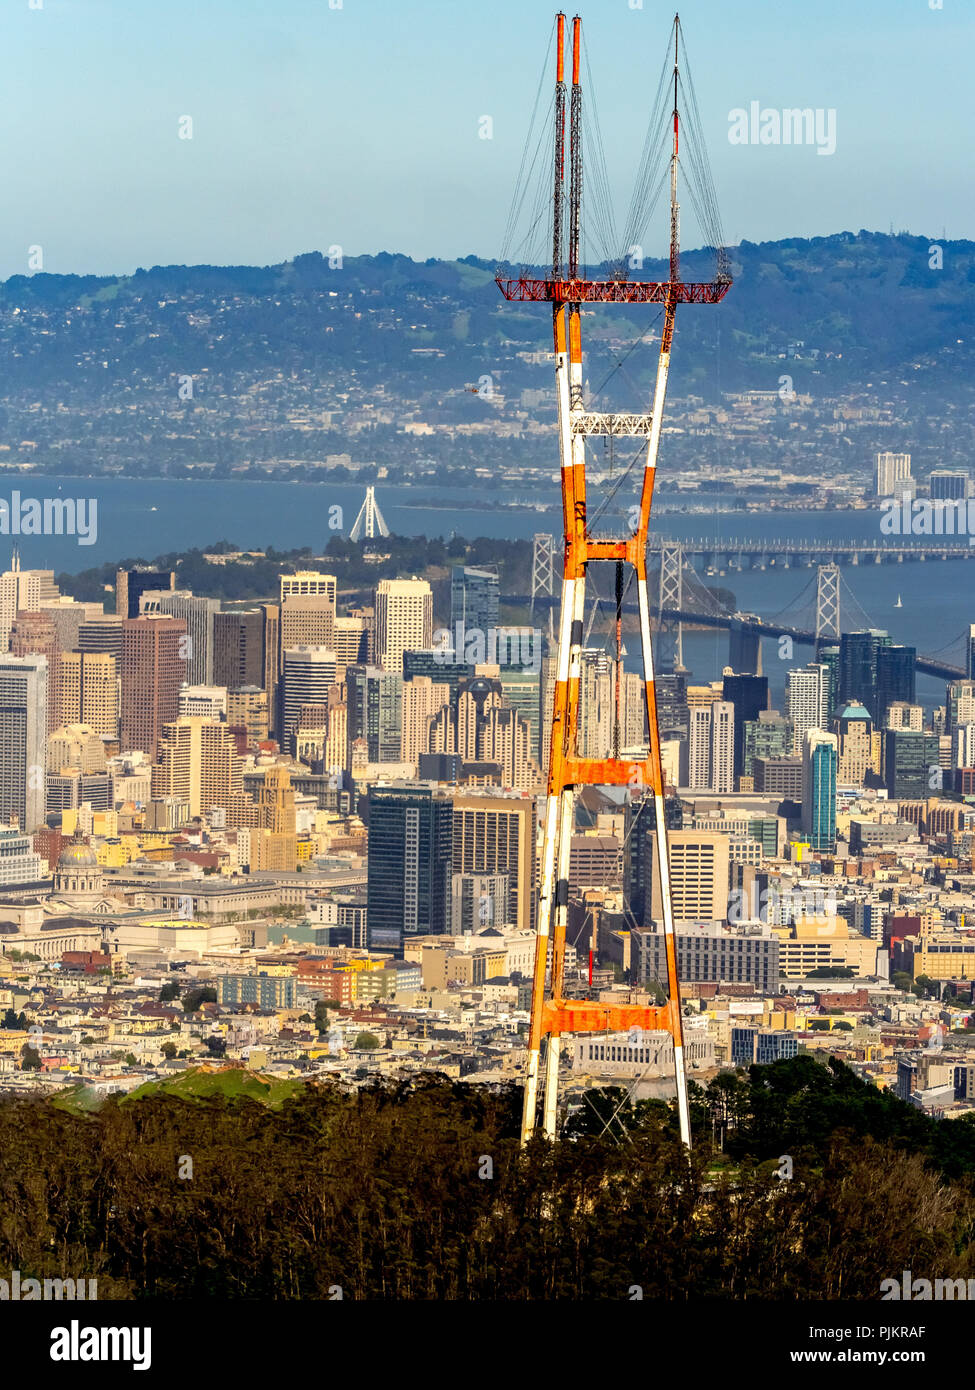 Sutro Tower, Telekommunikation Turm auf dem Mount Sutro, Stahl truss Tower, Kommunikation Turm mit Blick auf San Francisco, San Francisco Bay Area, Vereinigten Staaten von Amerika, Kalifornien, USA Stockfoto